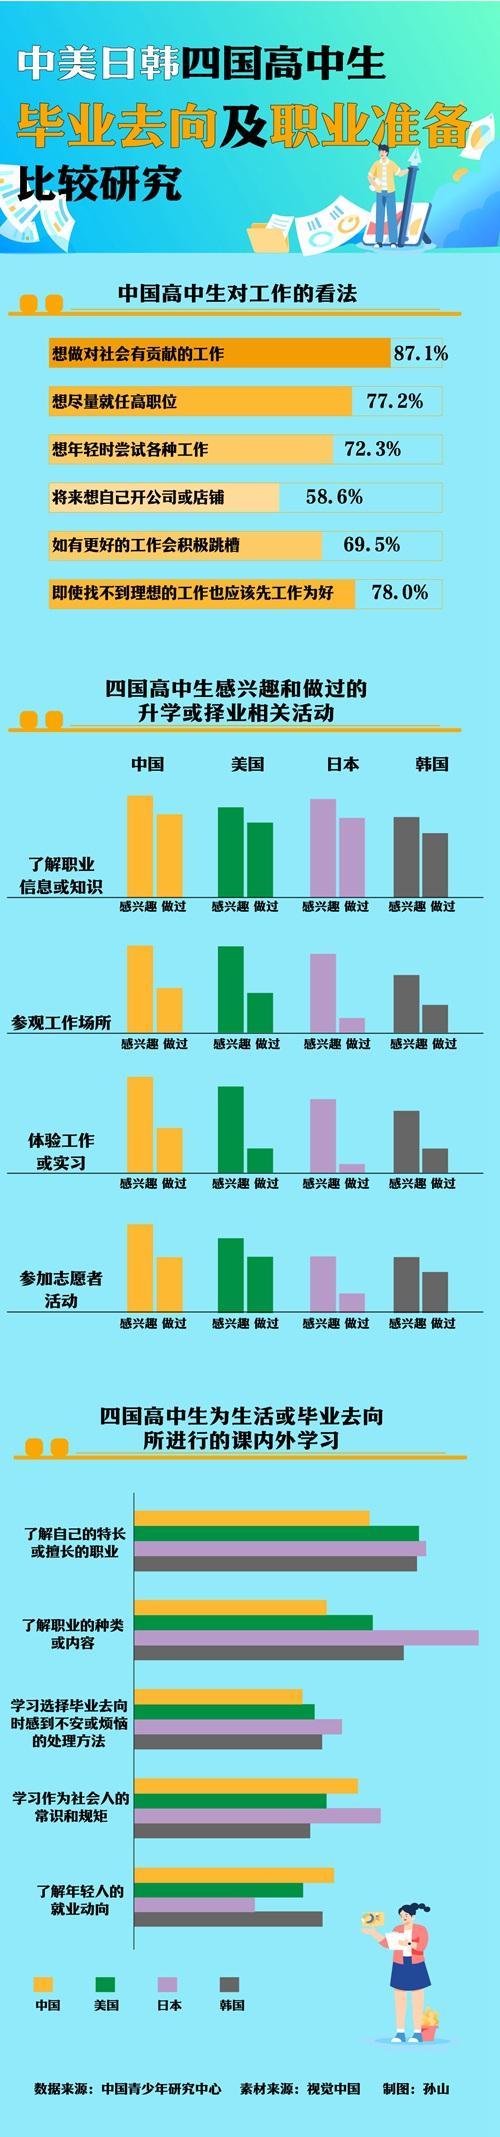 “中美日韩四国高中生毕业去向及职业准备比较研究”显示：中国高中生更想做对社会有贡献的工作